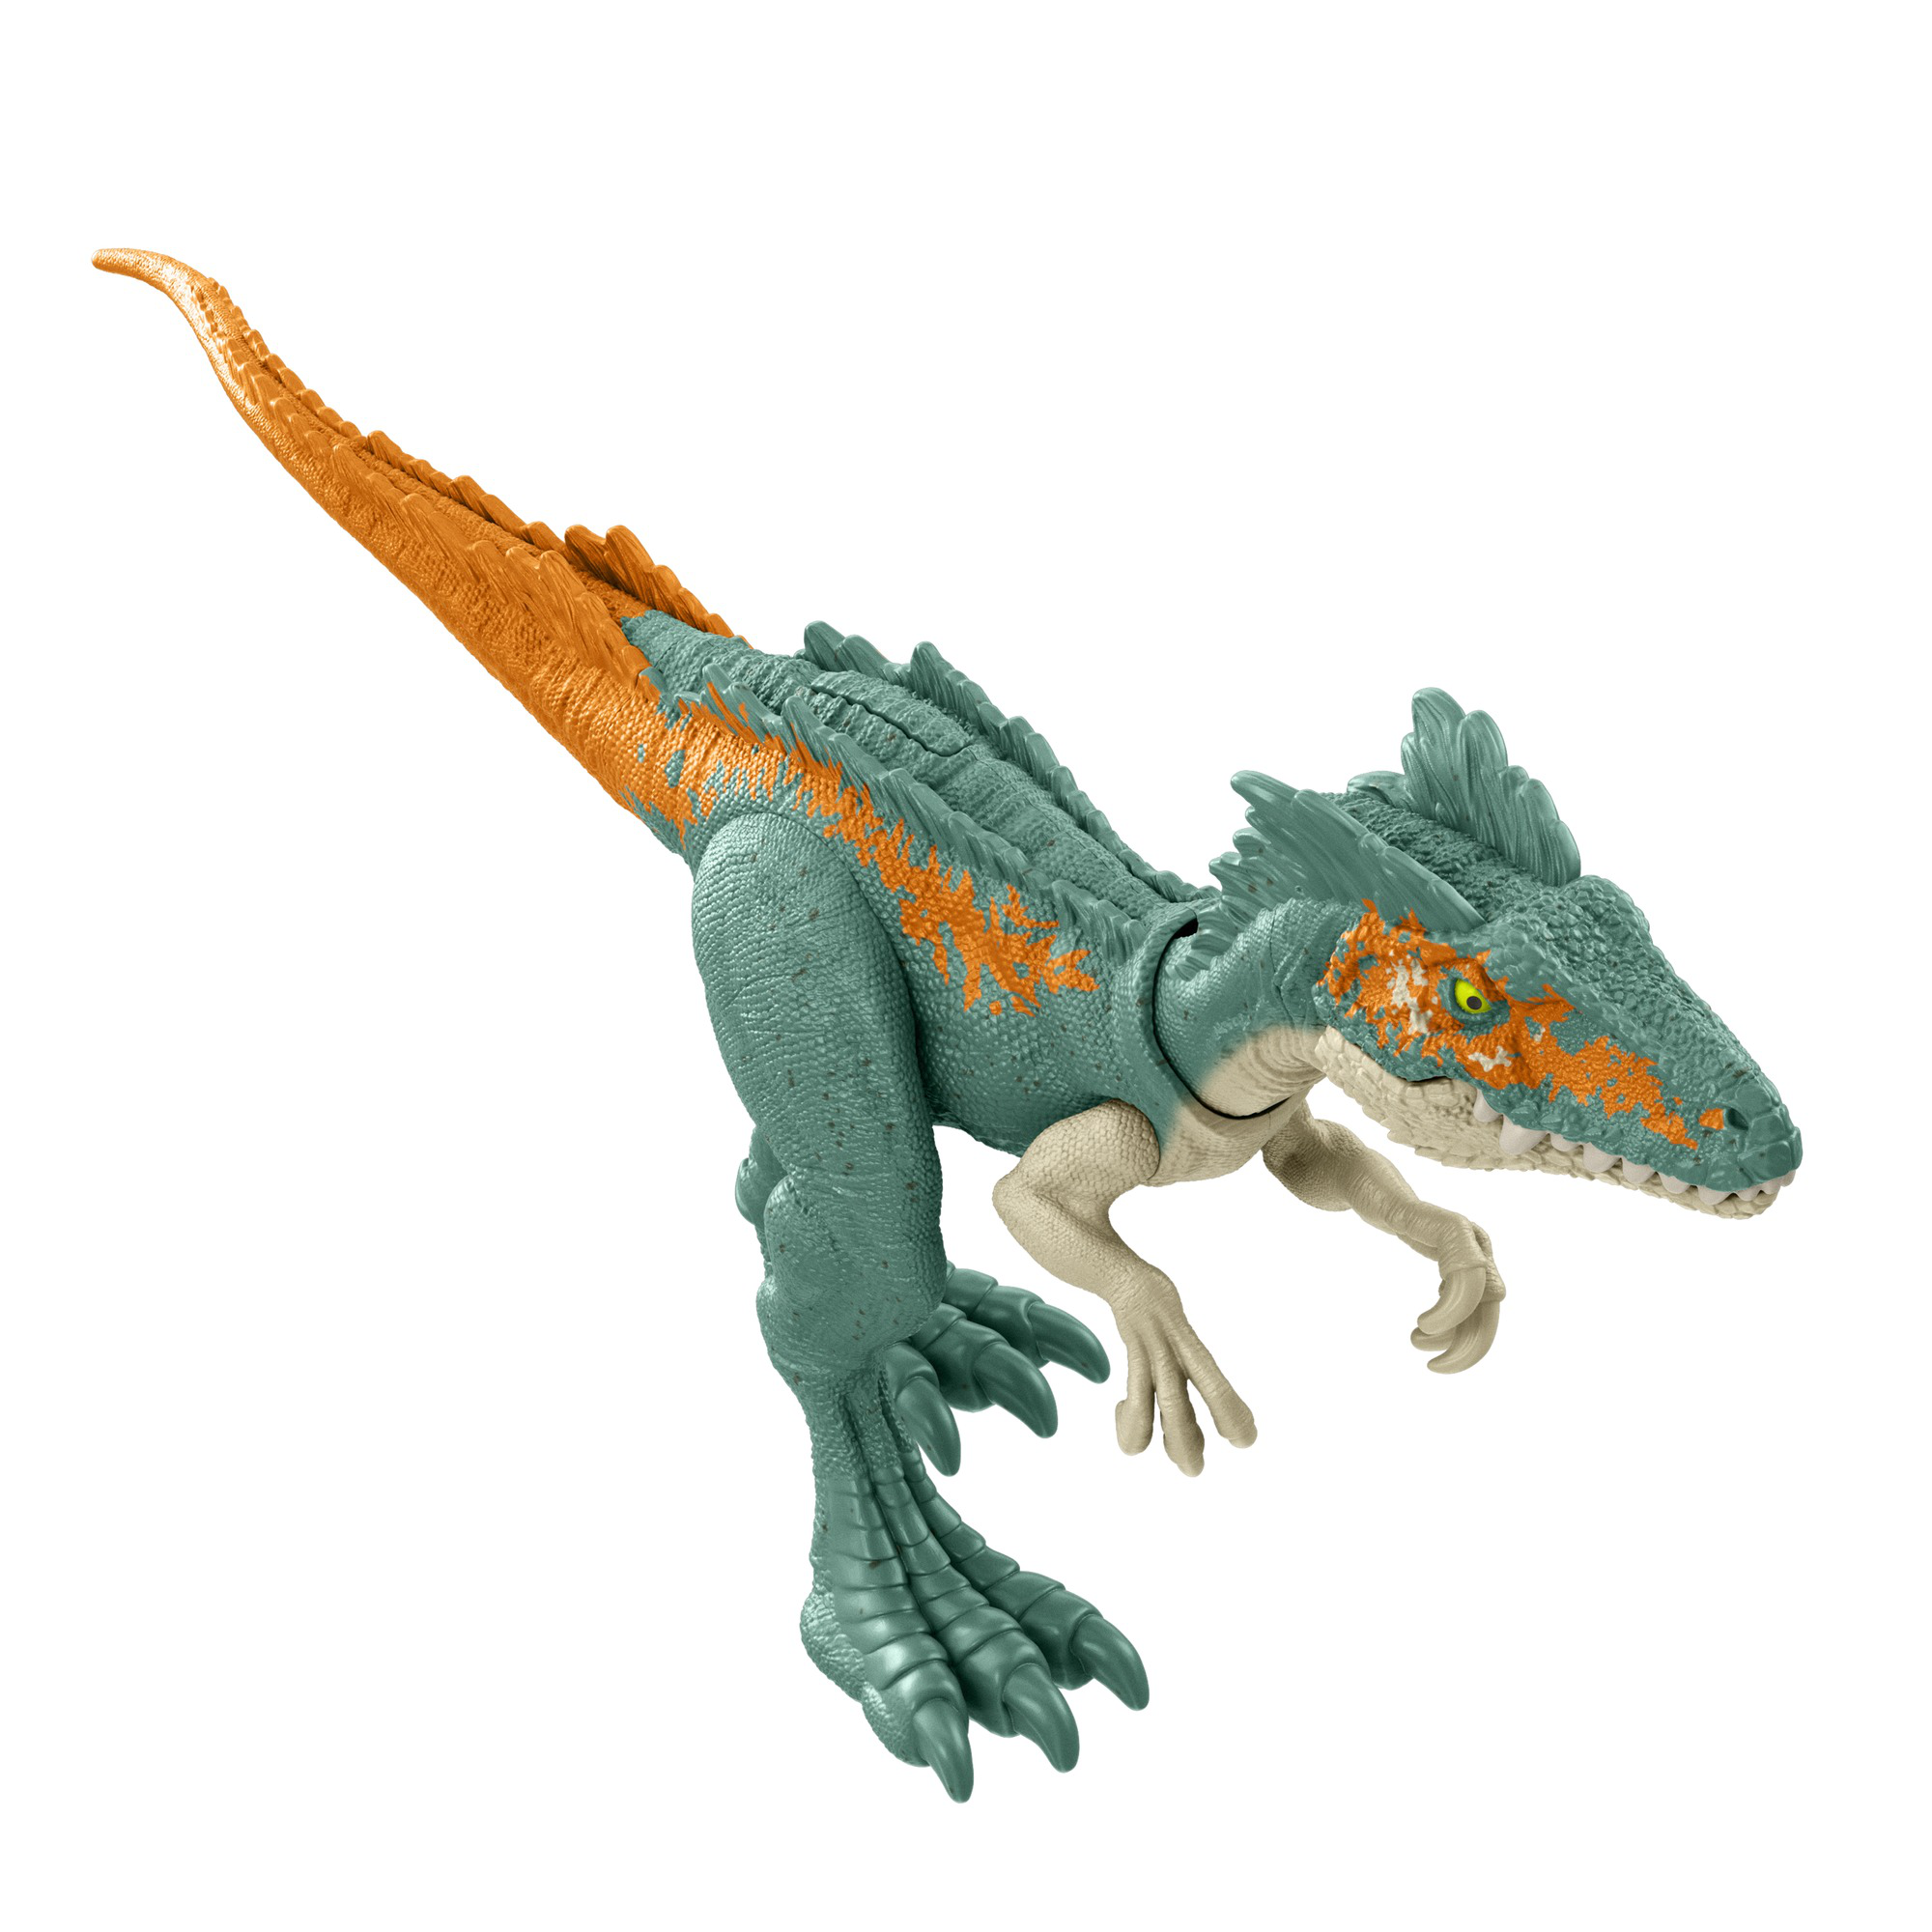 Jurassic world - moros intrepidus dinosauro giocattolo carnivoro con articolazioni mobili, per bambini 3+ anni - Jurassic World